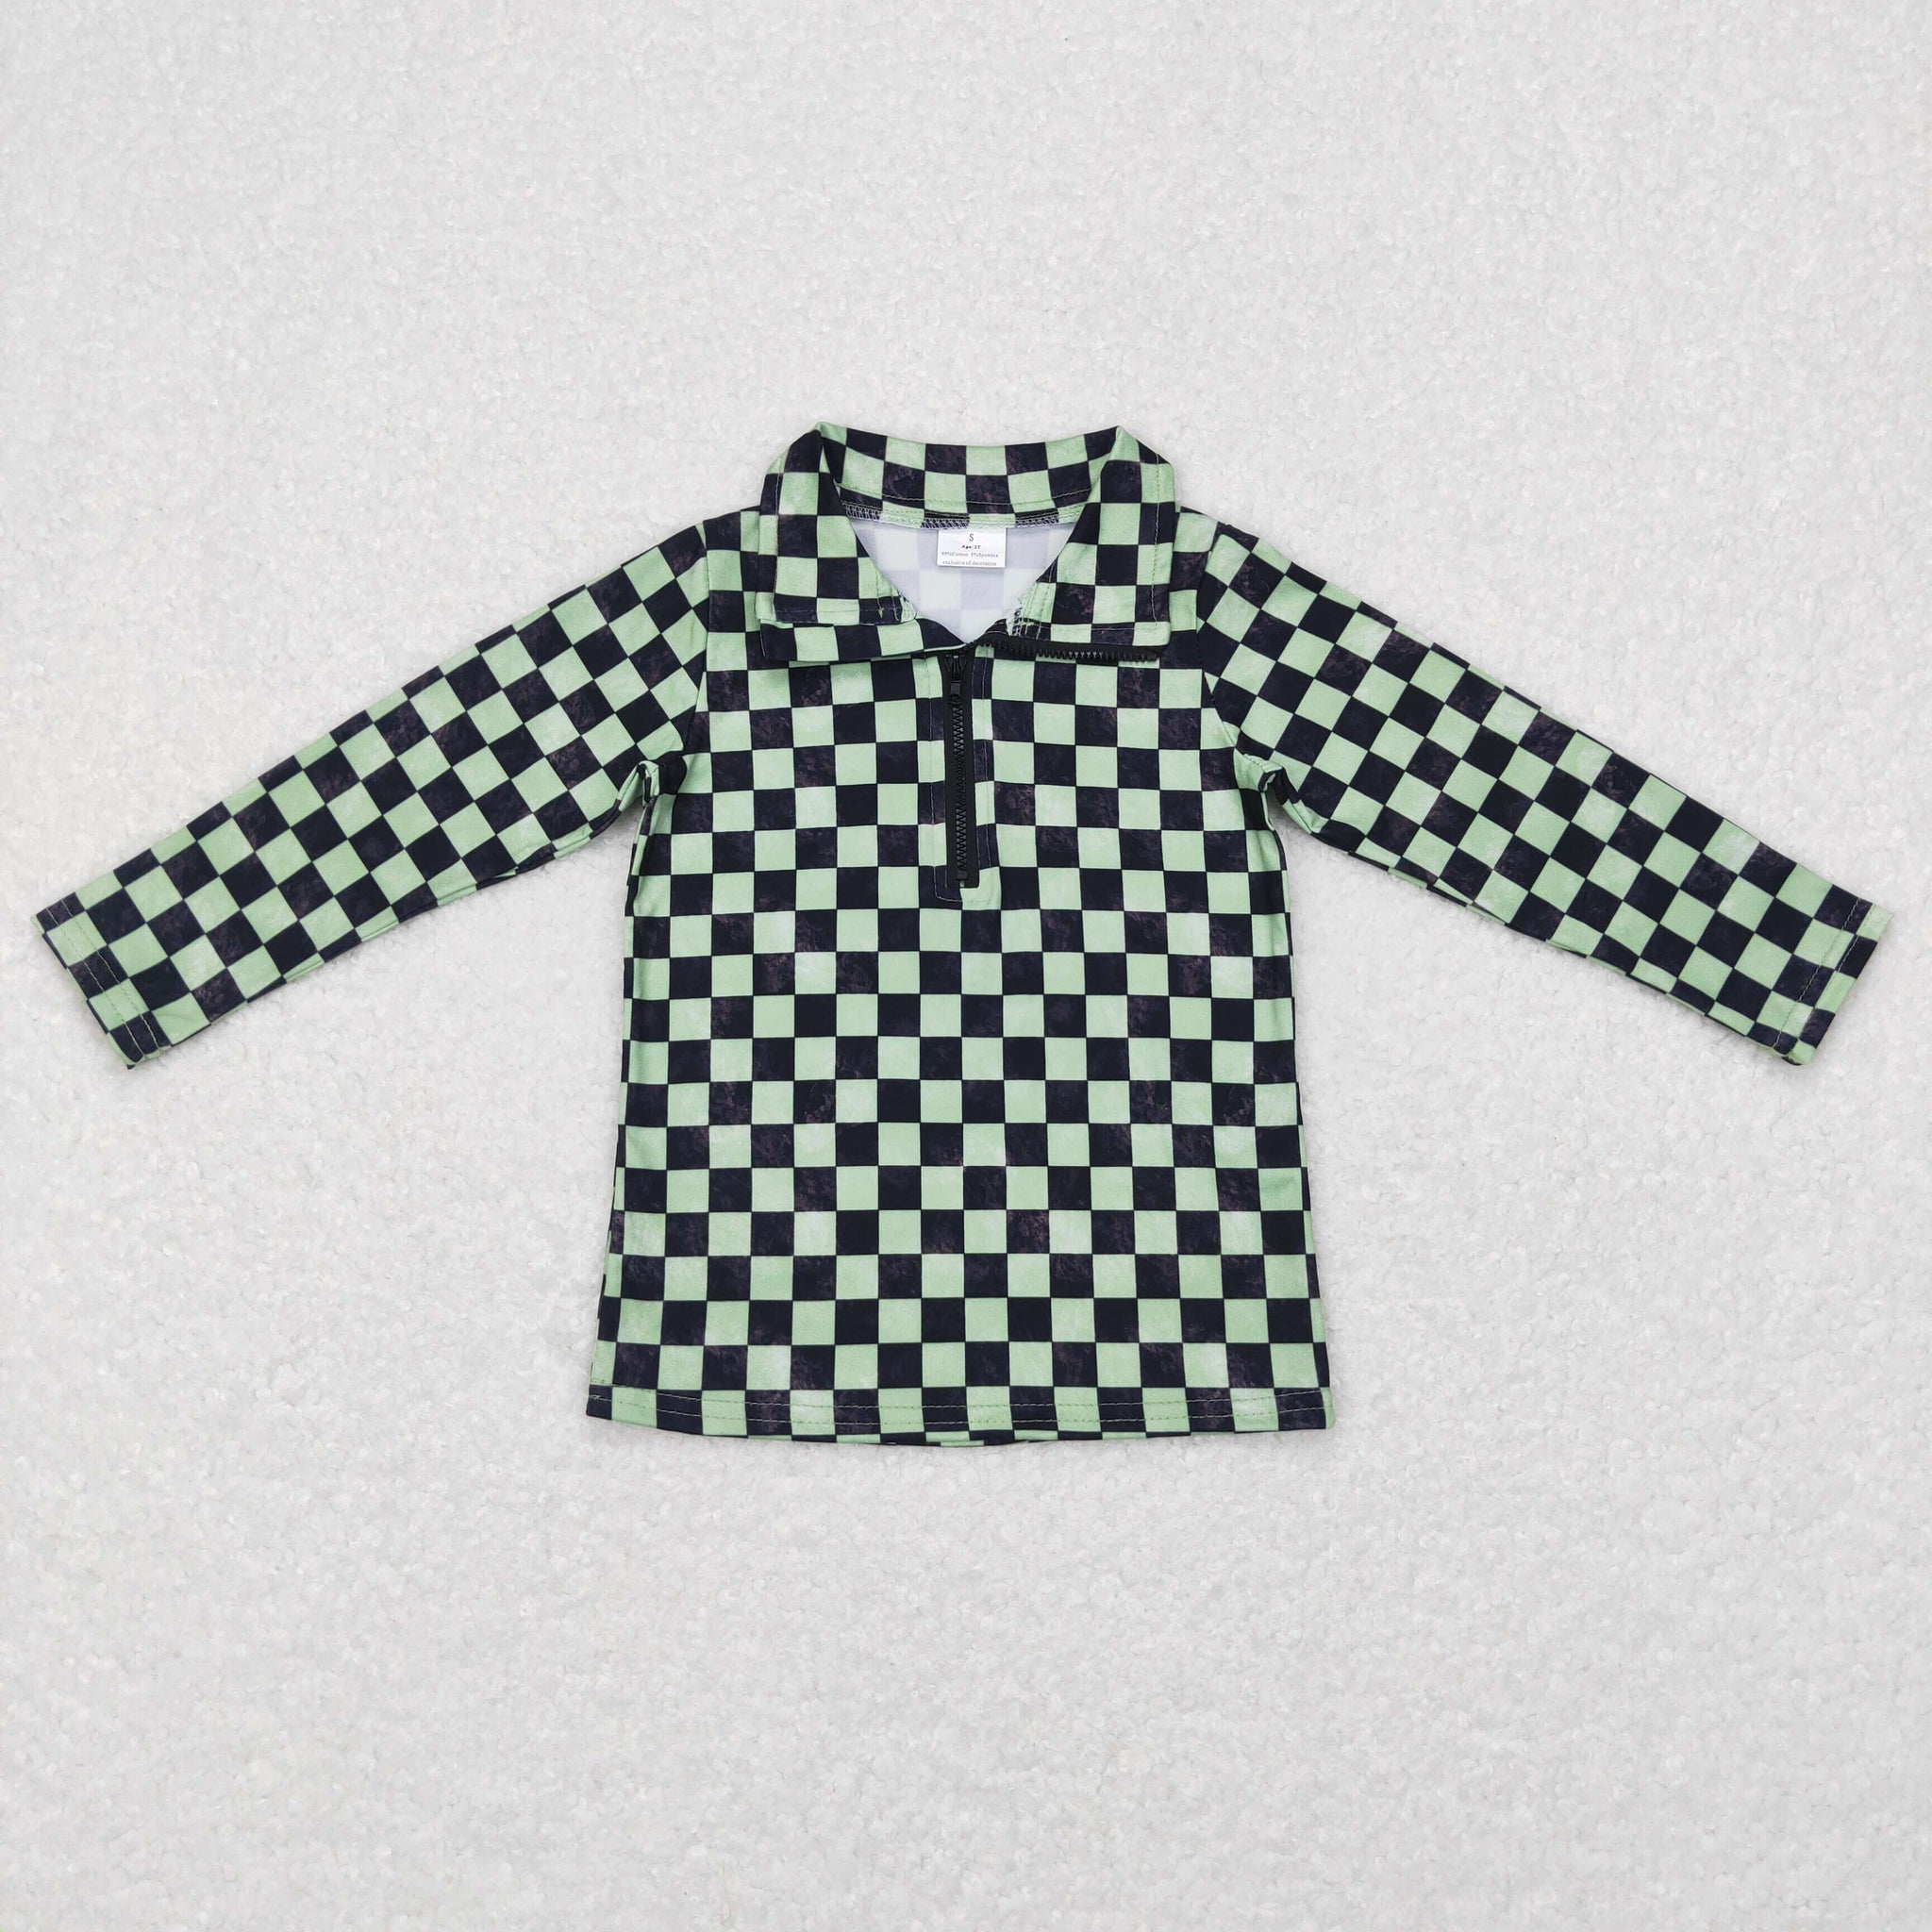 BT0399 baby boy boy clothes green plaid winter zipper top shirt pullover